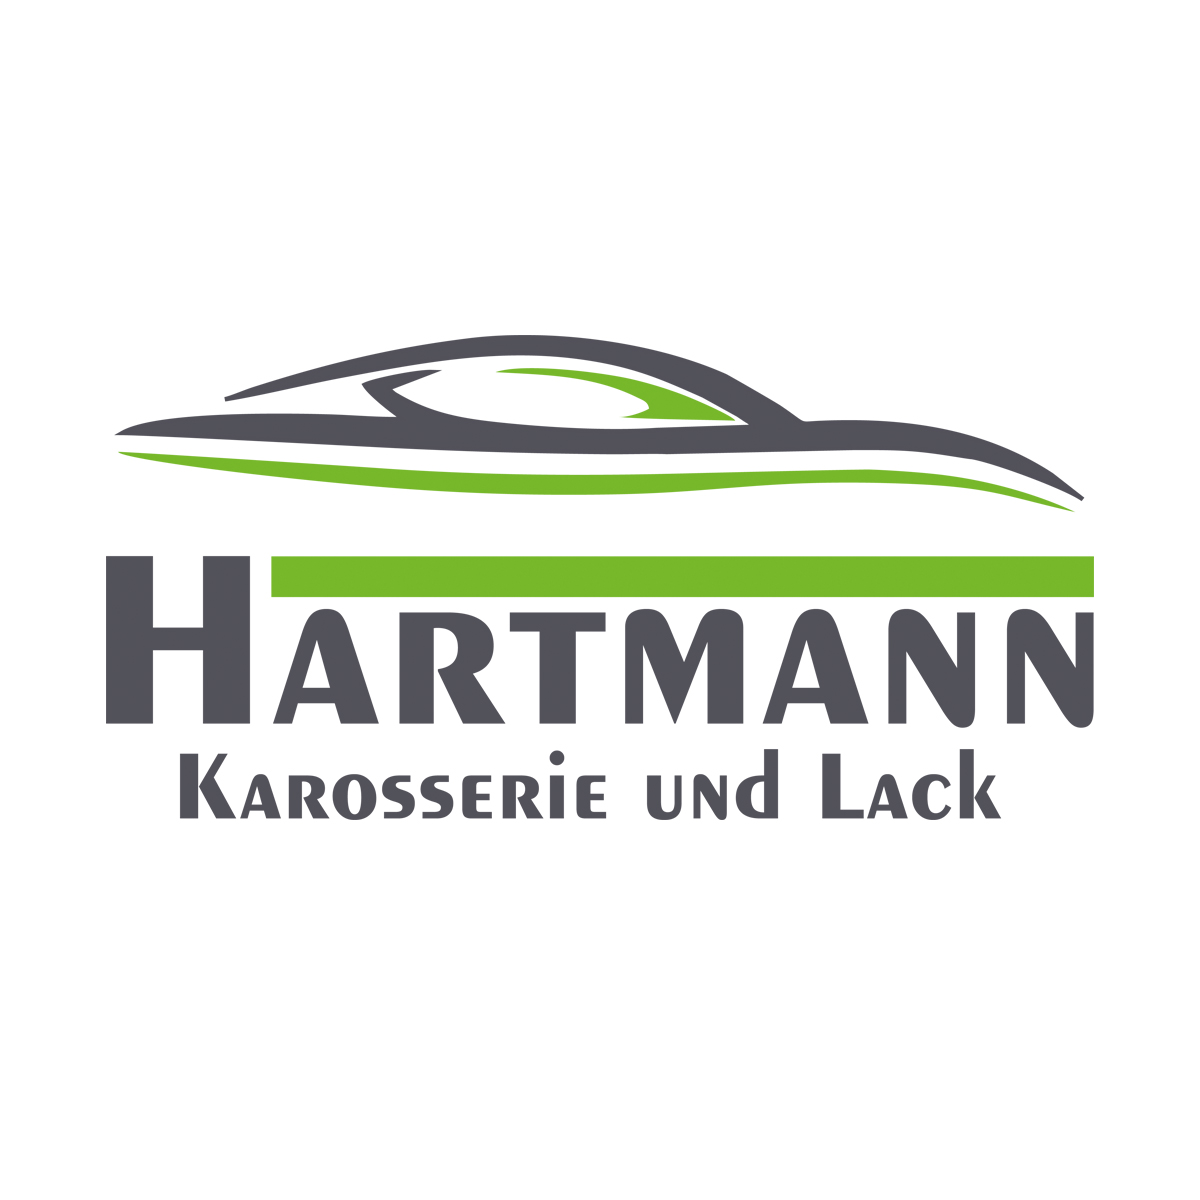 Bild 2 Karosseriebau Hartmann in Karlstein a.Main